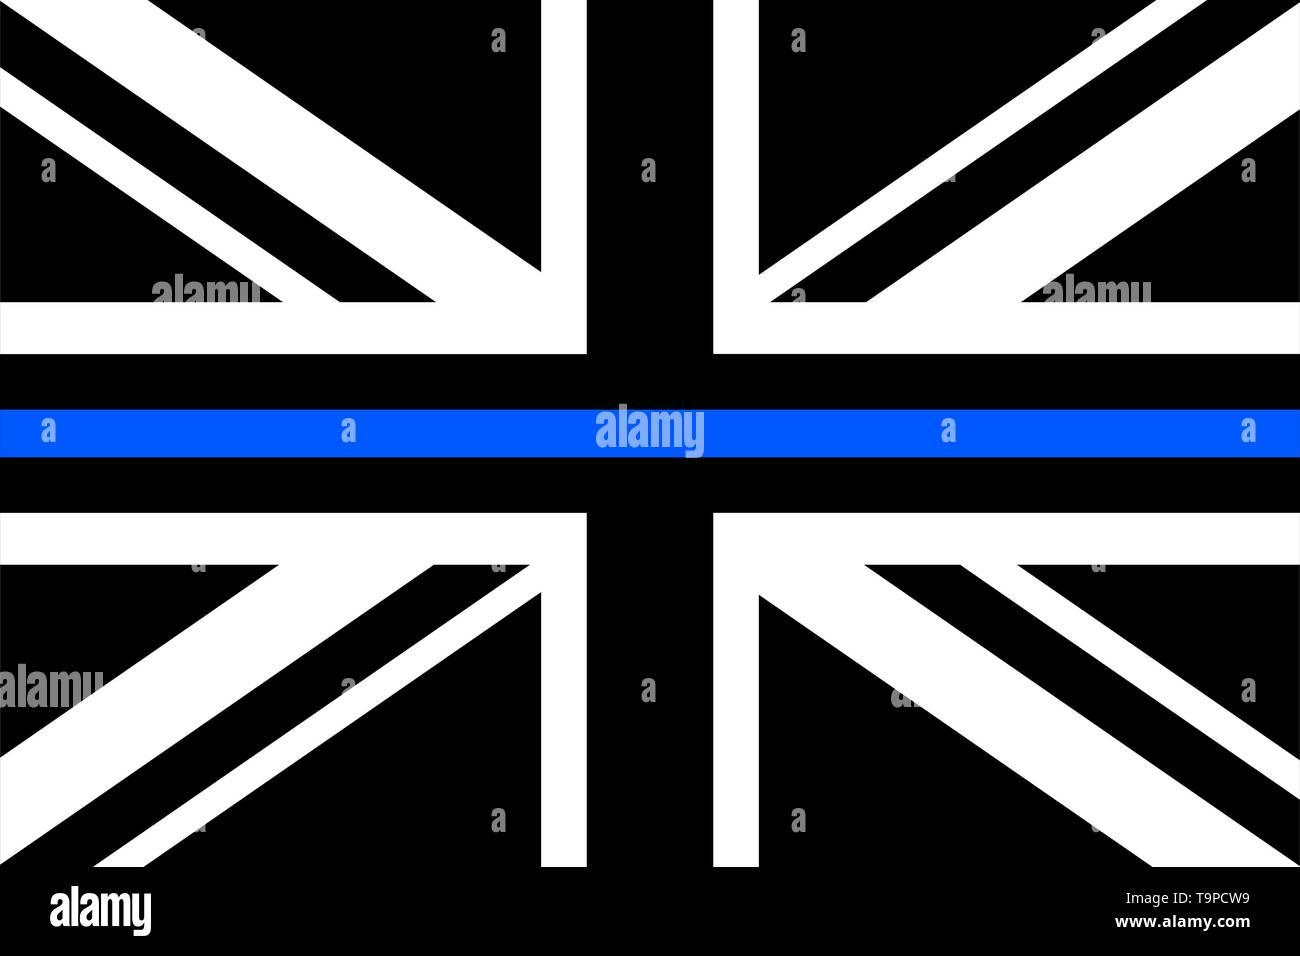 Royaume-uni un drapeau avec fine ligne bleue - un signe d'honorer et de respecter la police, l'armée et des officiers militaires. Illustration de Vecteur